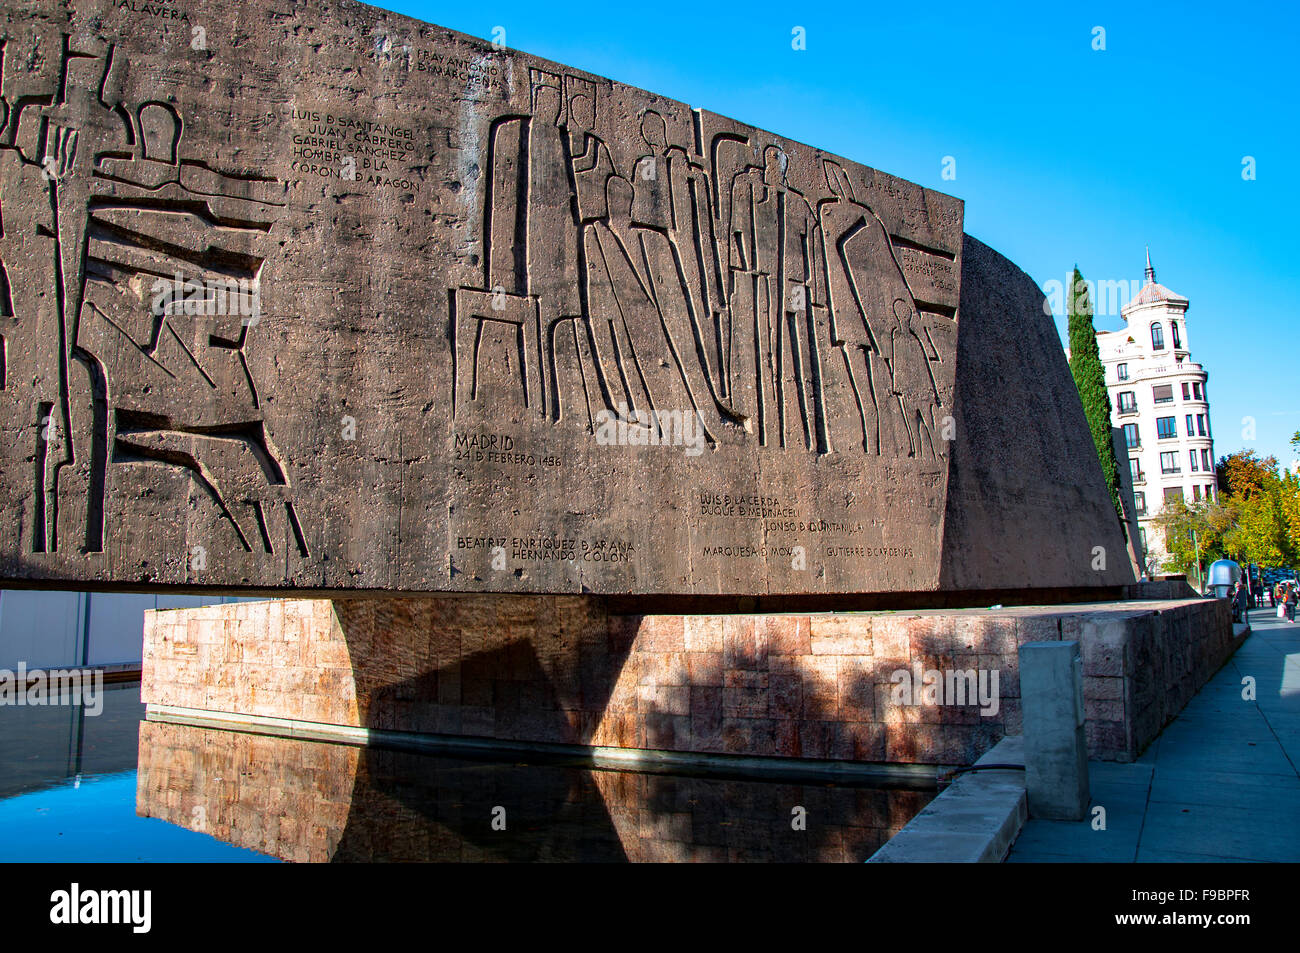 Monumento al Descubrimiento de América, Plaza Colón, Madrid, Spanien Stockfoto